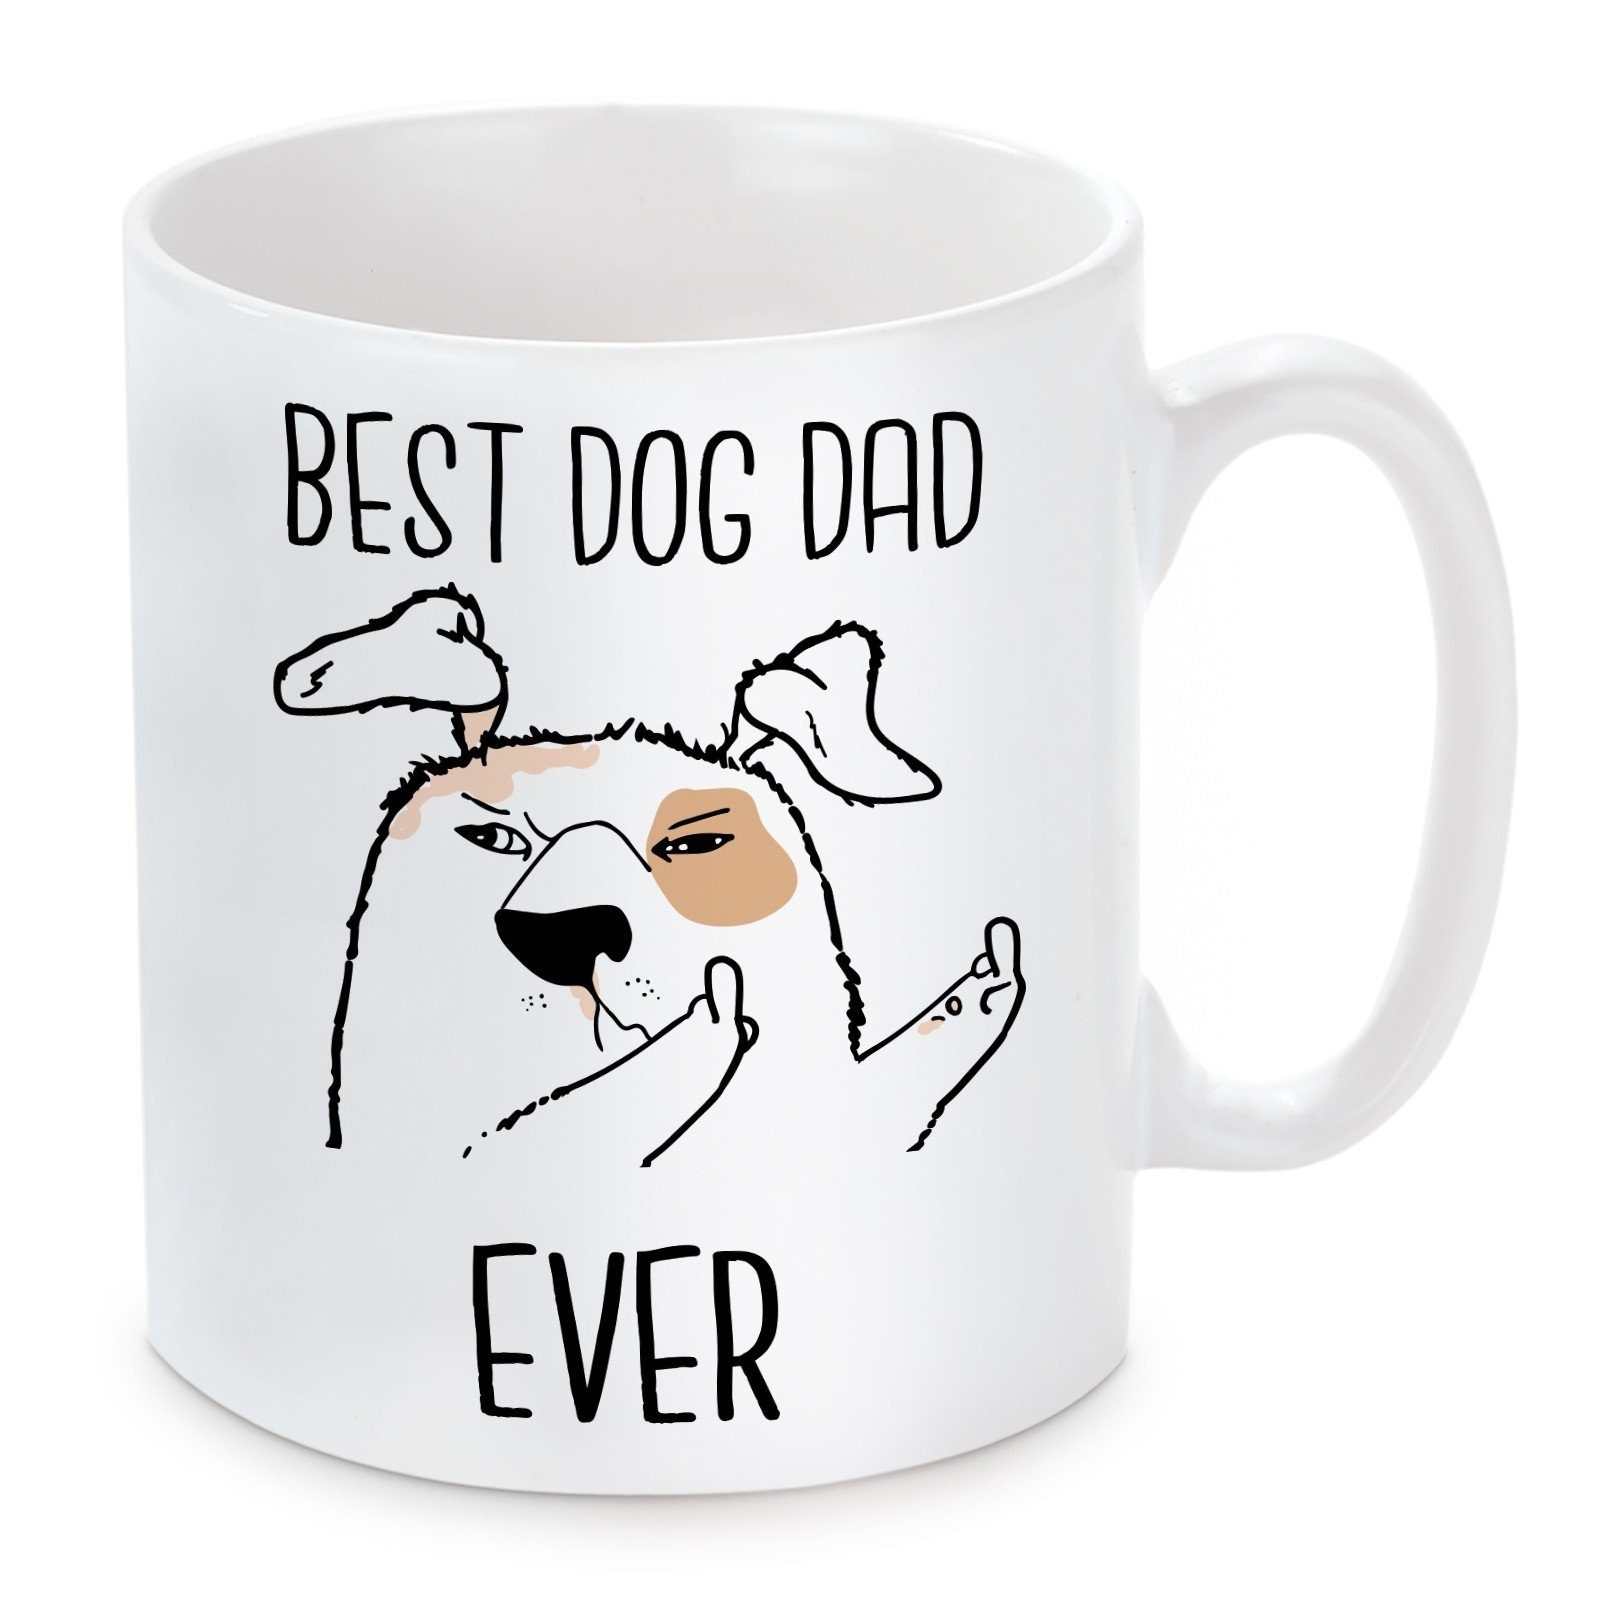 Herzbotschaft Tasse Kaffeebecher mit Motiv Best Dog Dad Ever., Keramik, Kaffeetasse spülmaschinenfest und mikrowellengeeignet